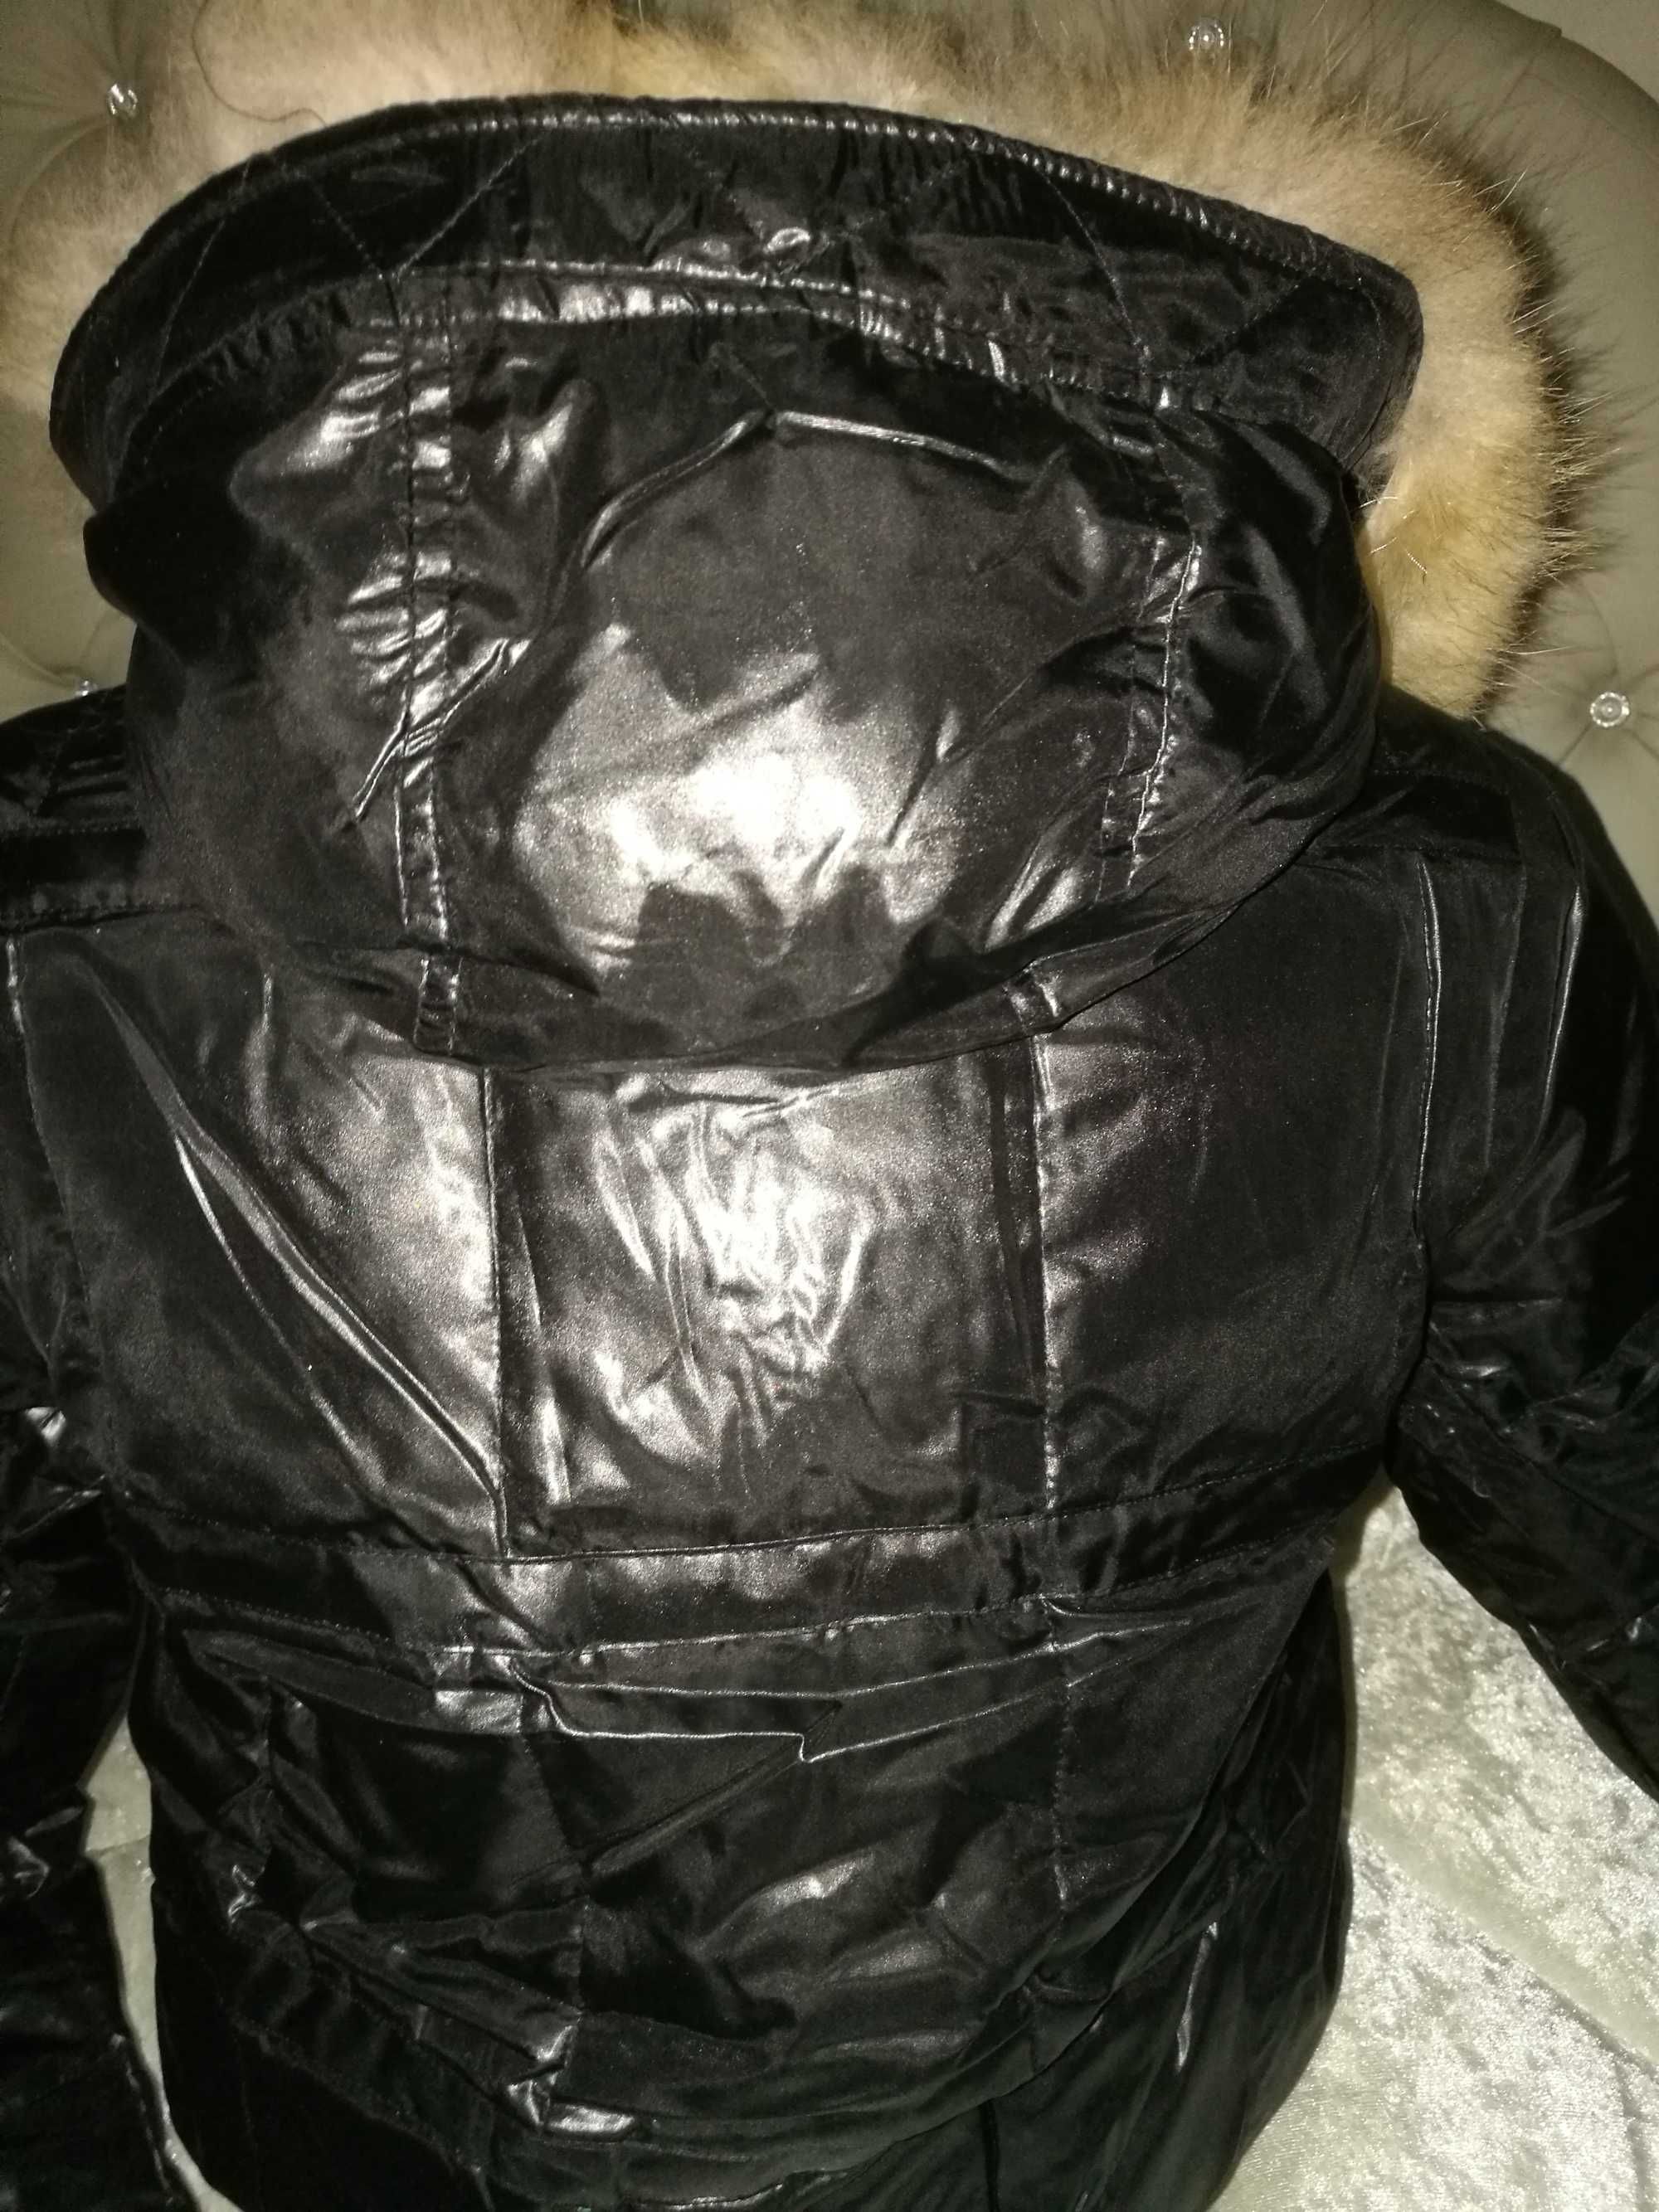 Зимно дамско яке с пух и естествен косъм размер S с безплатна доставка